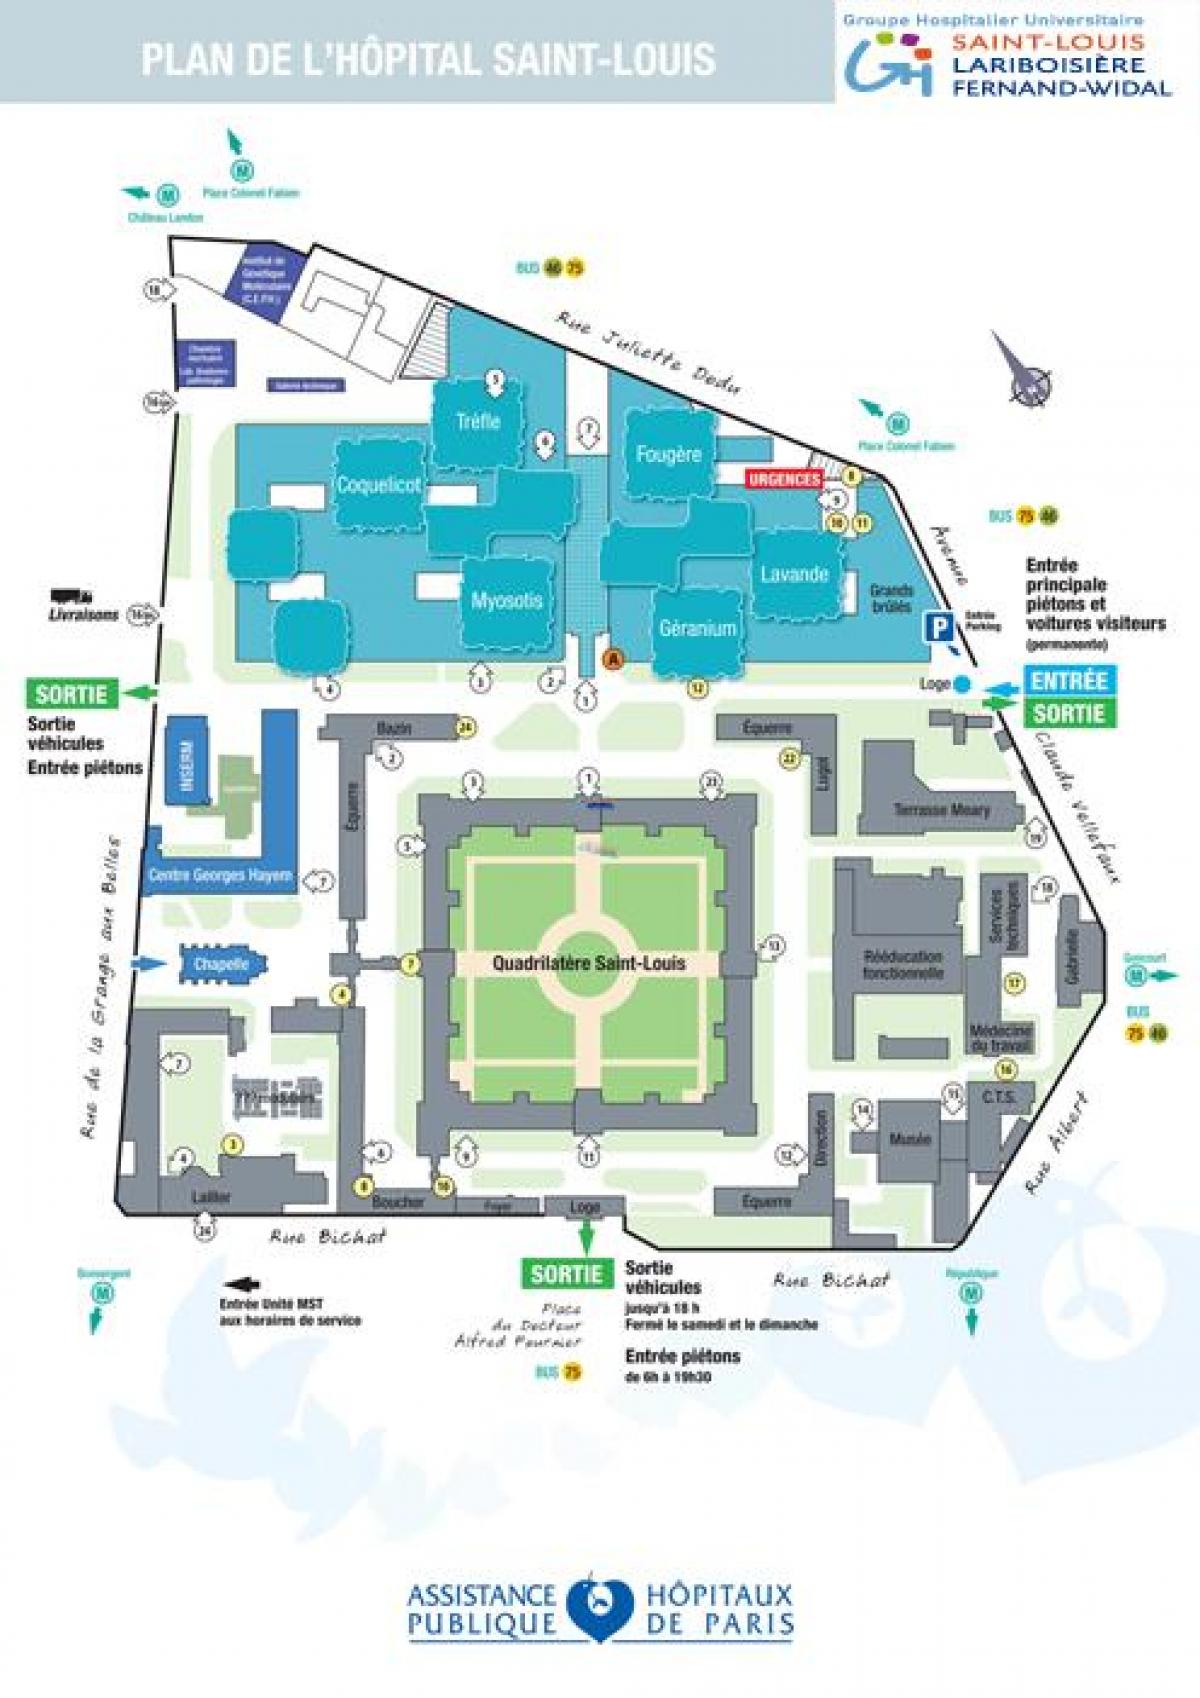 Peta dari Saint-Louis rumah sakit